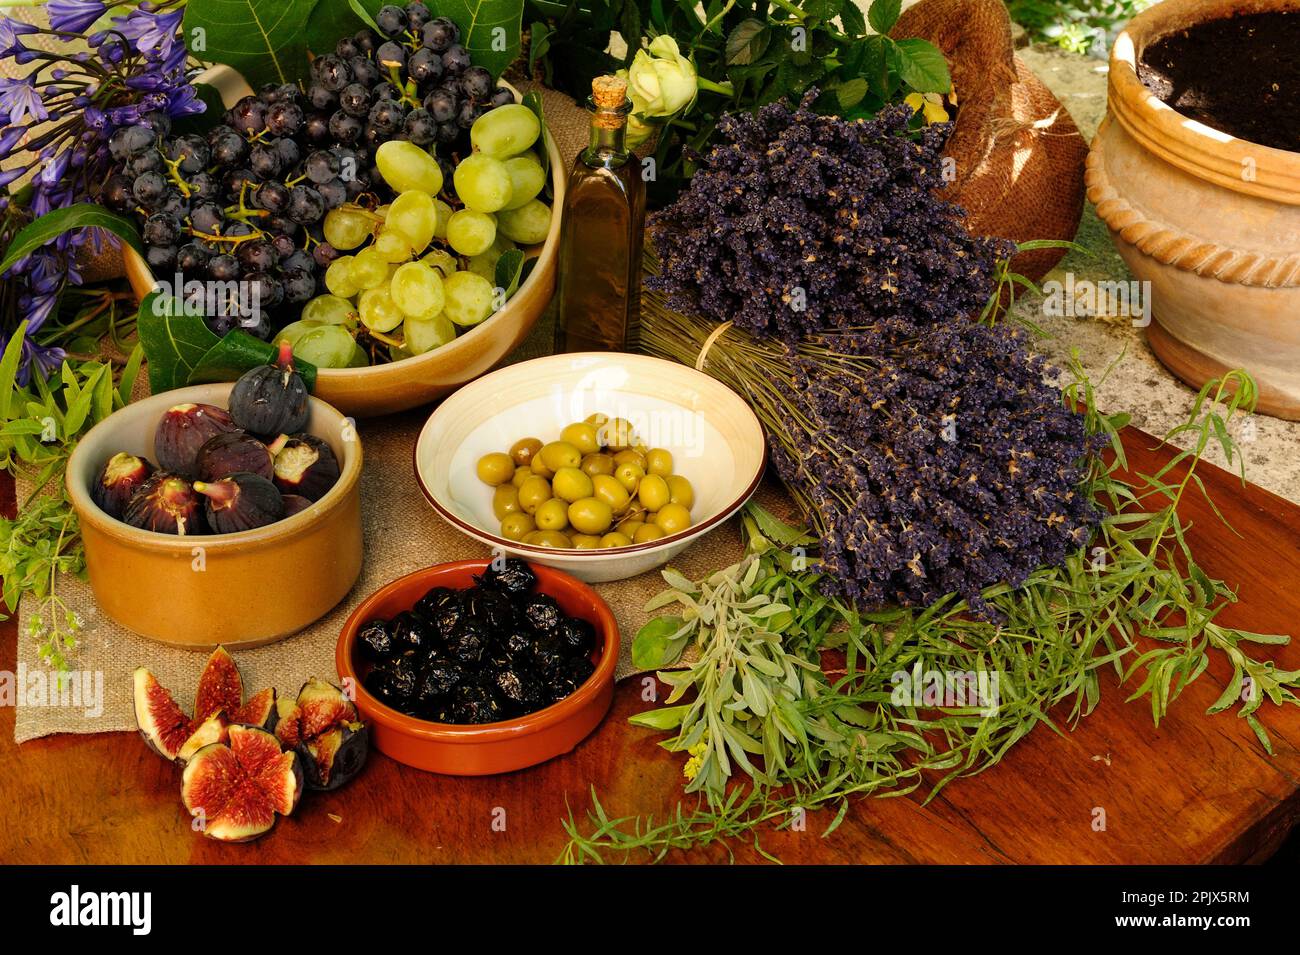 Tavola dei prodotti del giardino provenzale con olive, fichi, uva ed erbe aromatiche, Vaucluse, Francia. Foto Stock